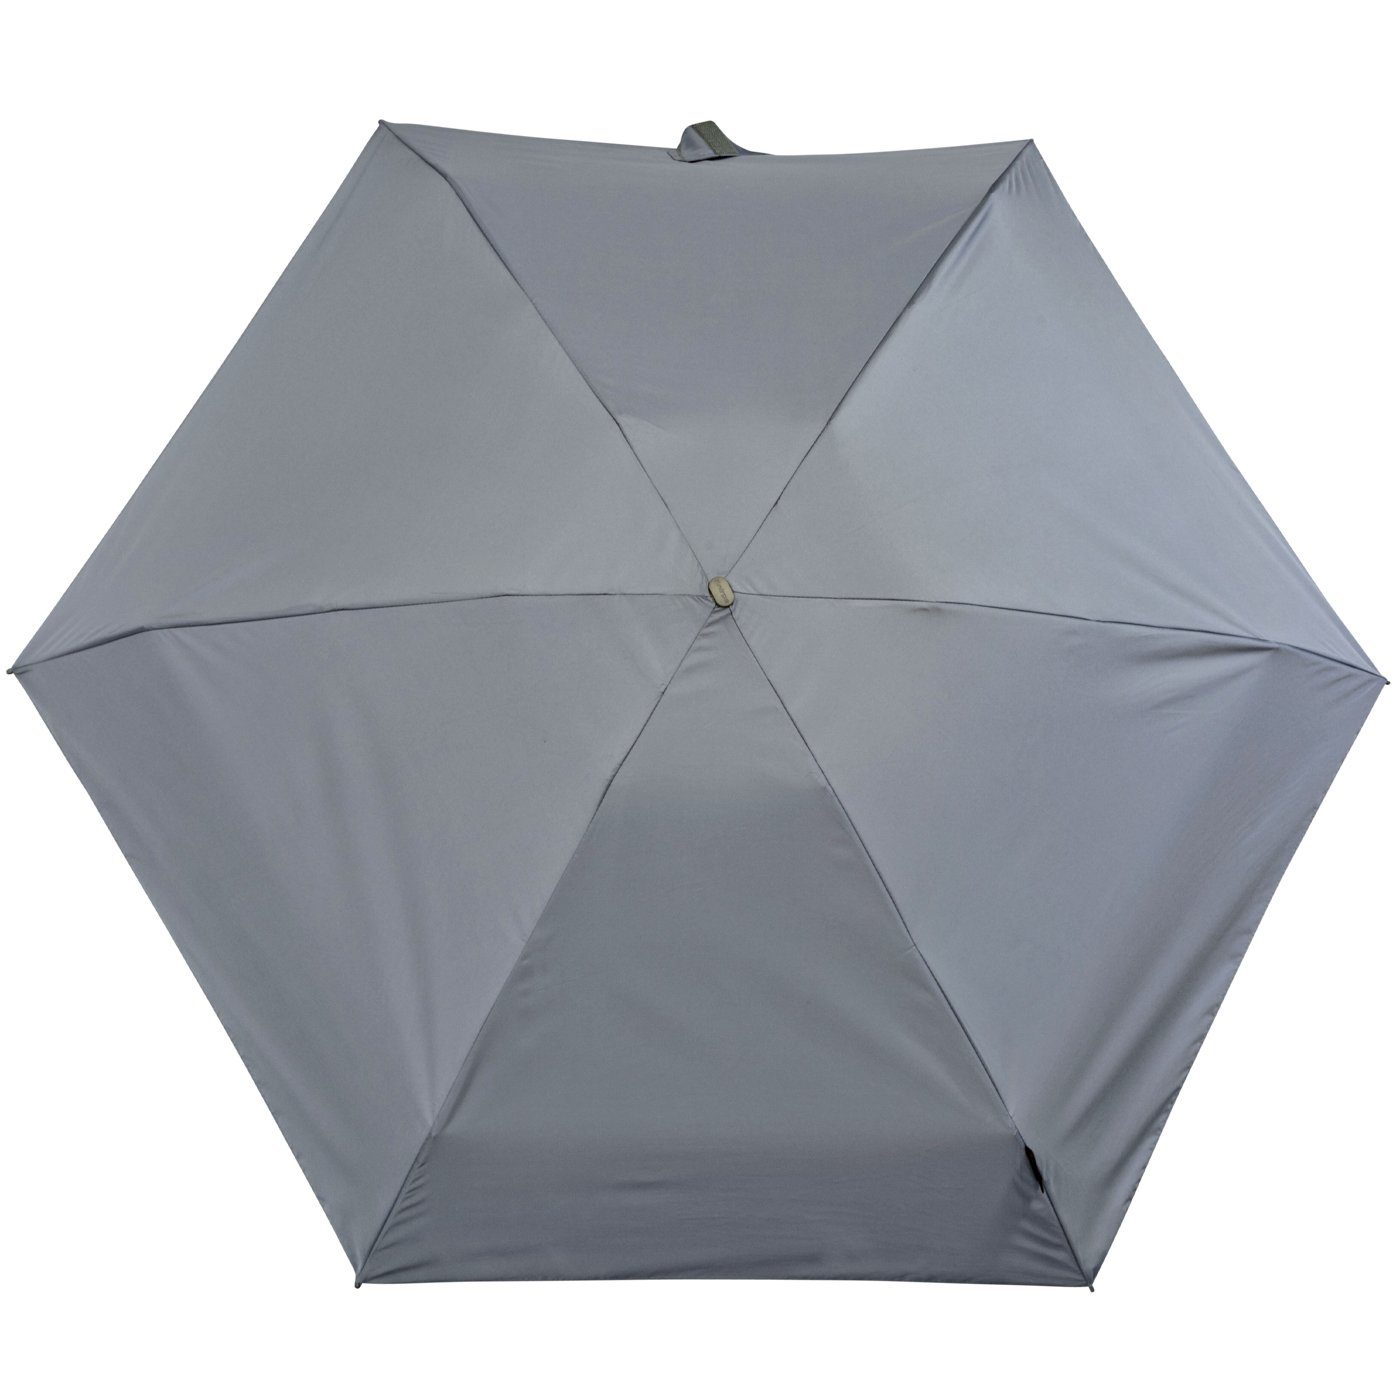 Damen-Taschenschirm, und grey winziger für grau - Taschenregenschirm flach, die Travel Knirps® leicht Handtasche